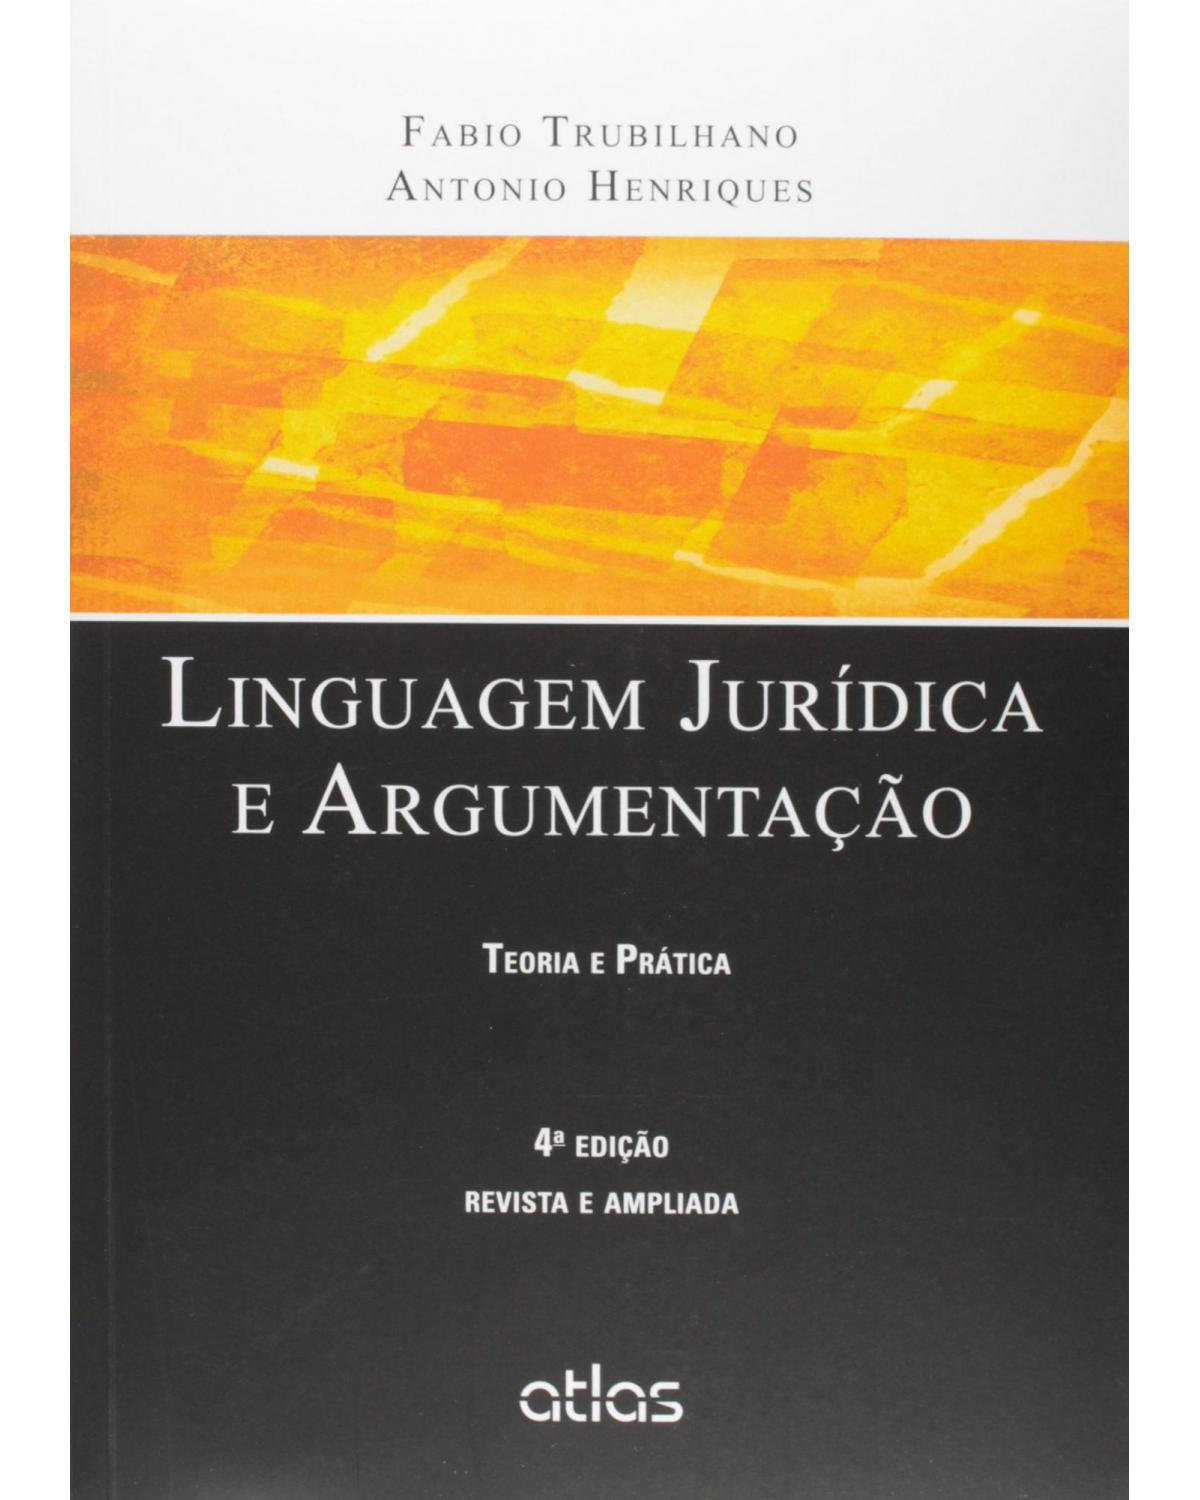 LINGUAGEM JURÍDICA E ARGUMENTAÇÃO: Teoria e Prática - Teoria e prática - 4ª Edição | 2015